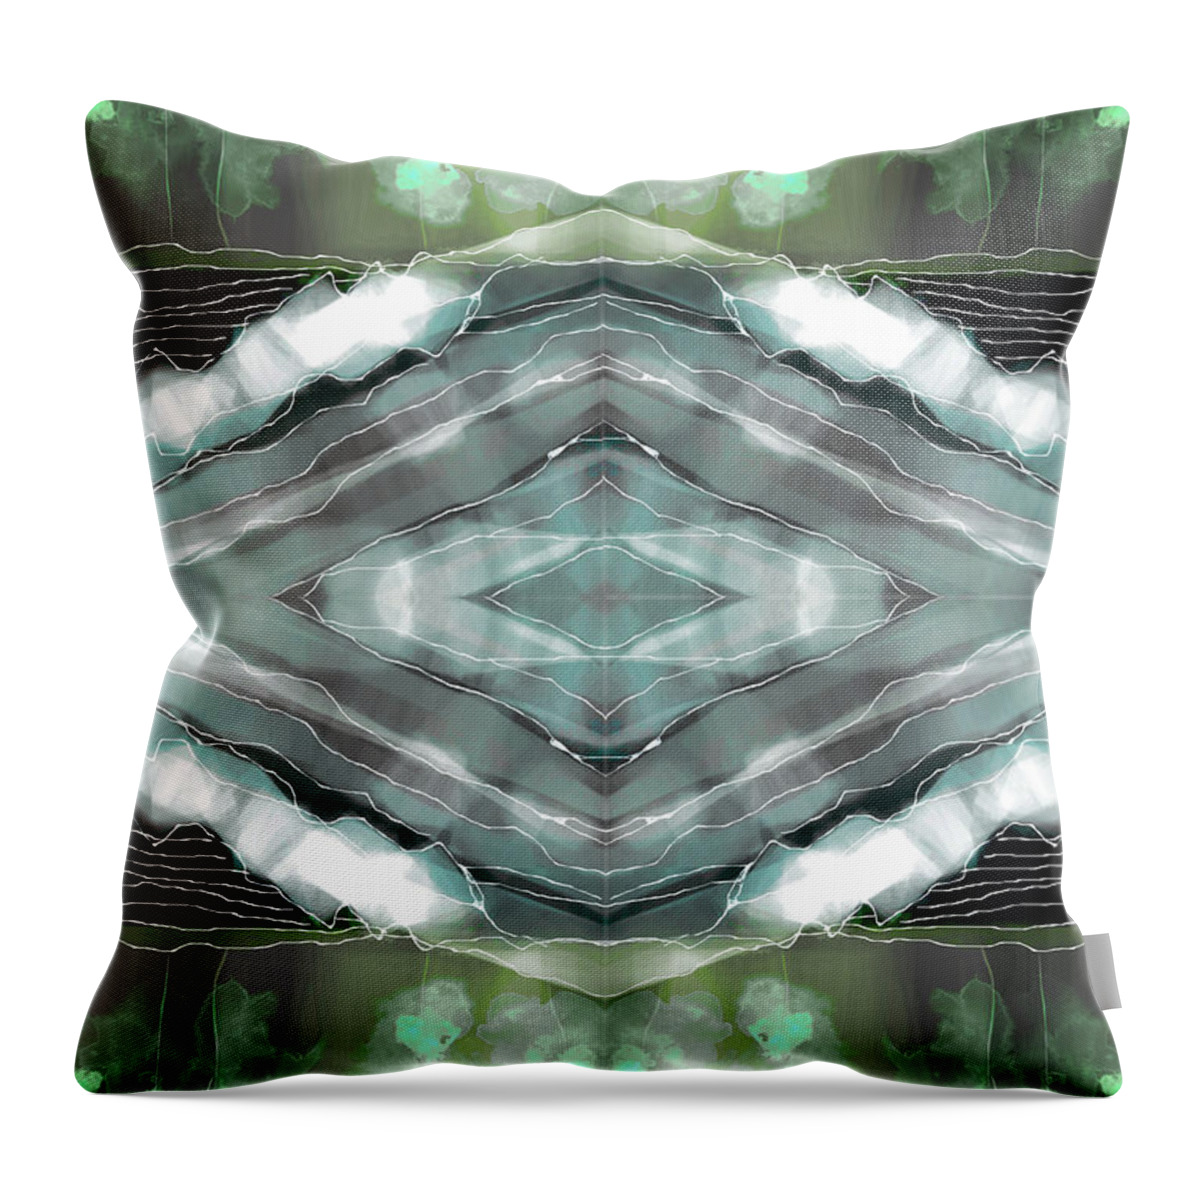 Sea Throw Pillow featuring the digital art Seascape by Alexandra Vusir